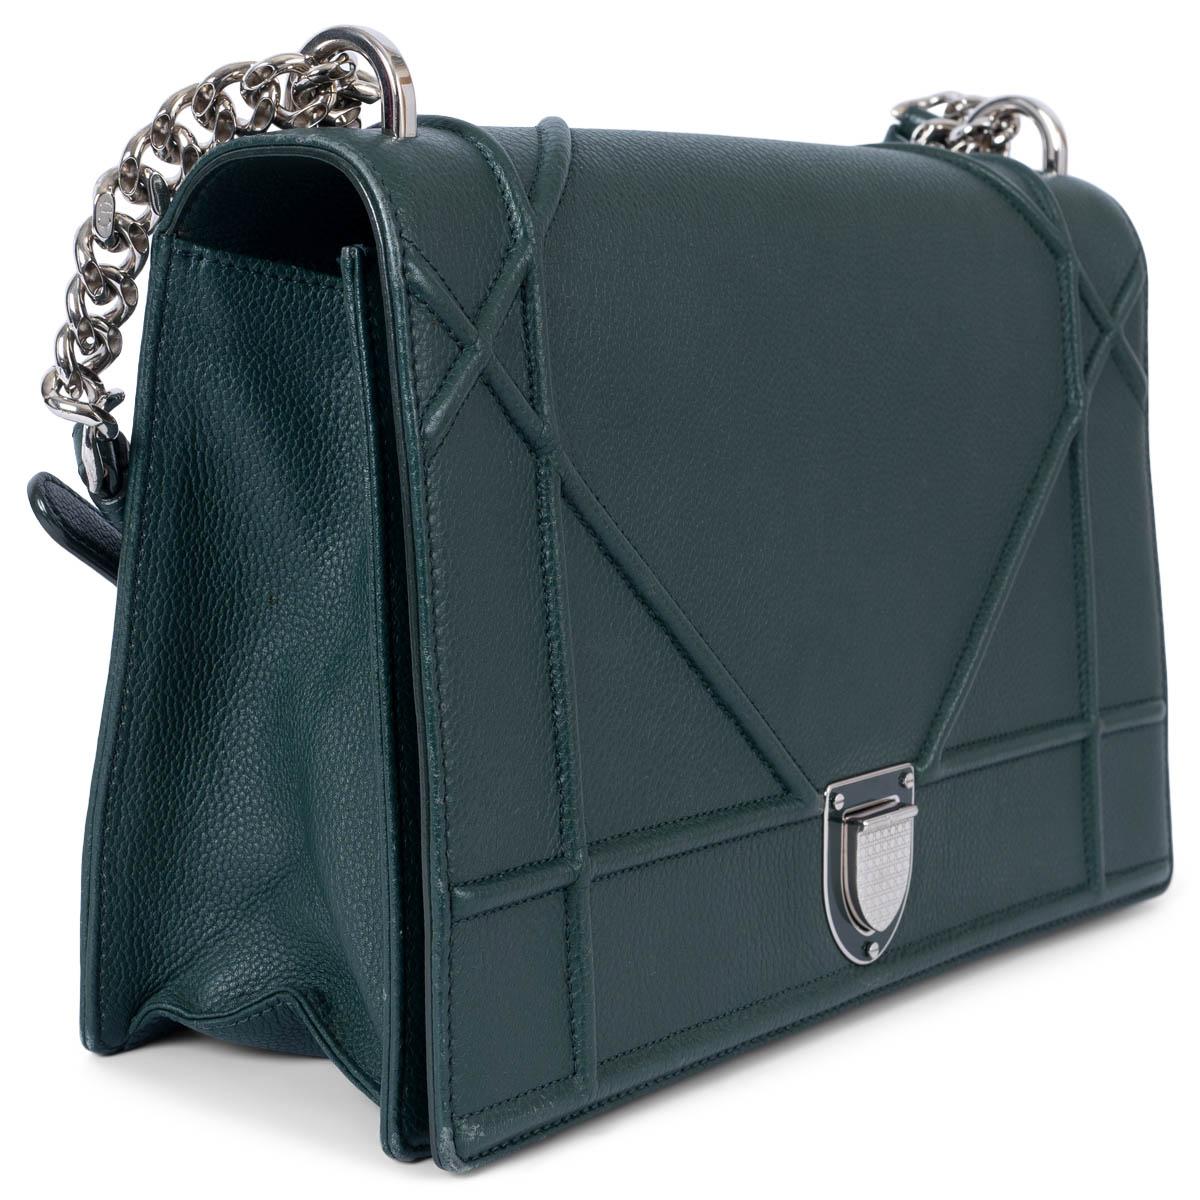 100% authentique Christian Dior Grand sac à bandoulière Diorama en veau grainé vert bouteille. Le modèle est recouvert du motif Cannage caractéristique de la marque et s'ouvre à l'aide d'une fermeture à poussoir sur le rabat. Doublé d'un tissu gros